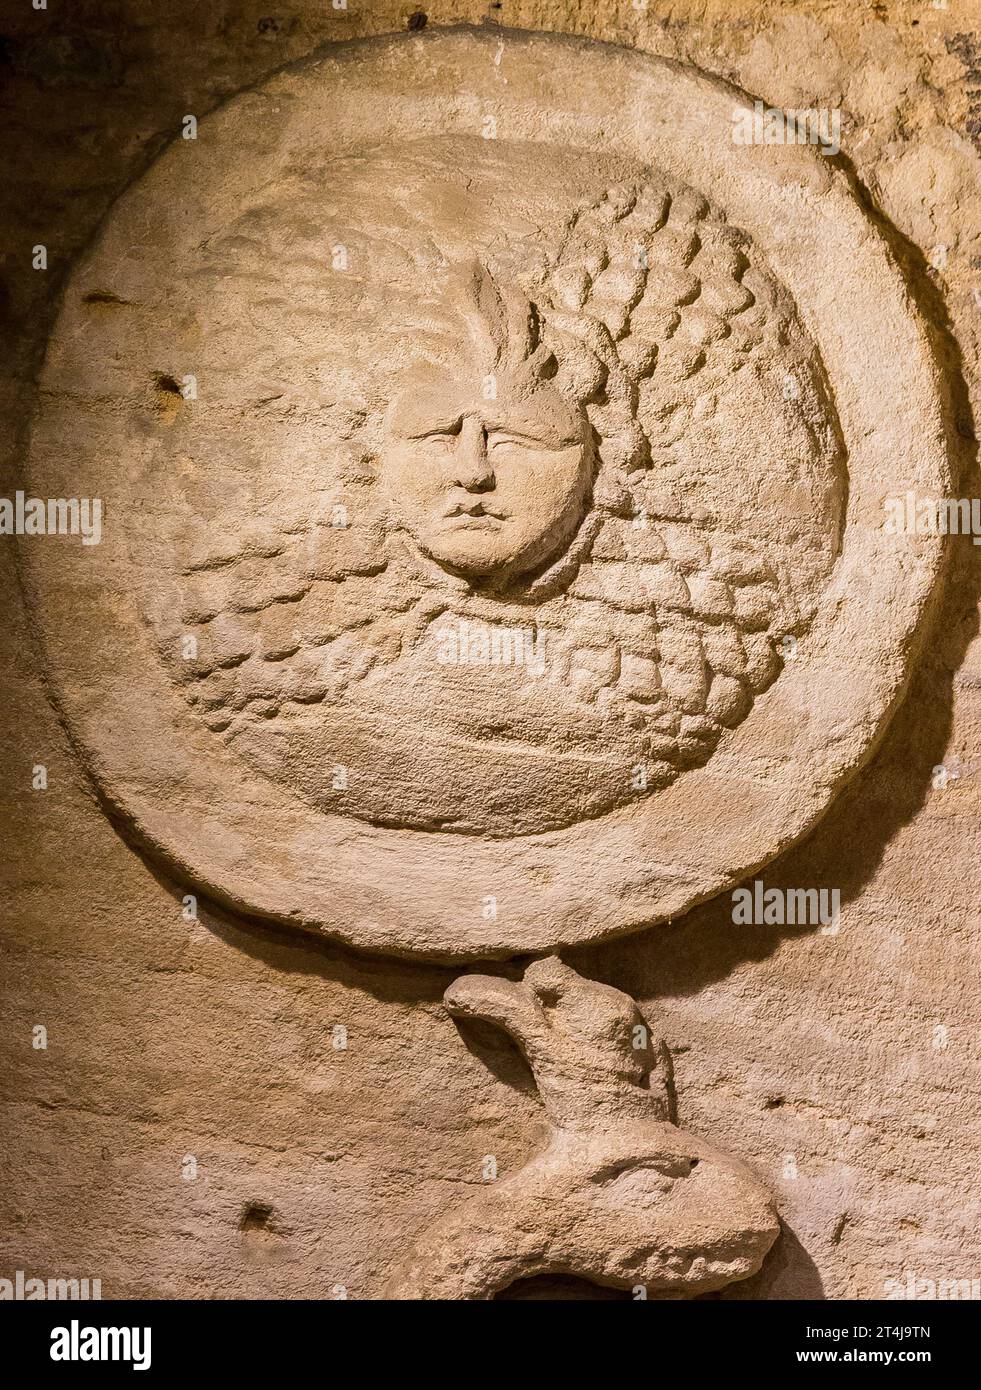 Necropoli di Kom el Shogafa, tomba principale, secondo portico: Testa di Medusa su scudo. Foto Stock